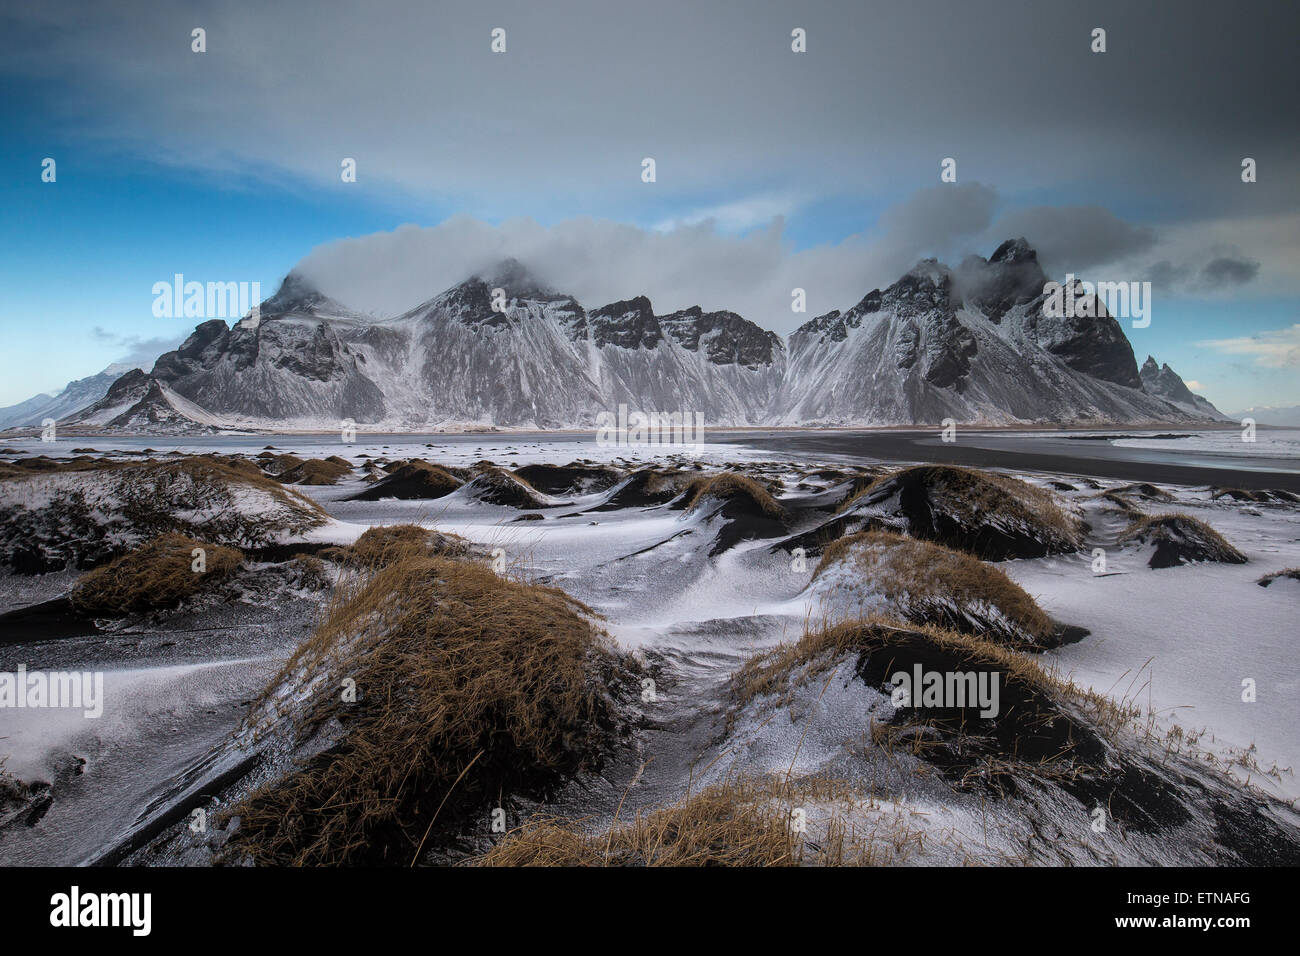 Montagnes couvertes de neige par plage de sable noir, l'Islande Banque D'Images